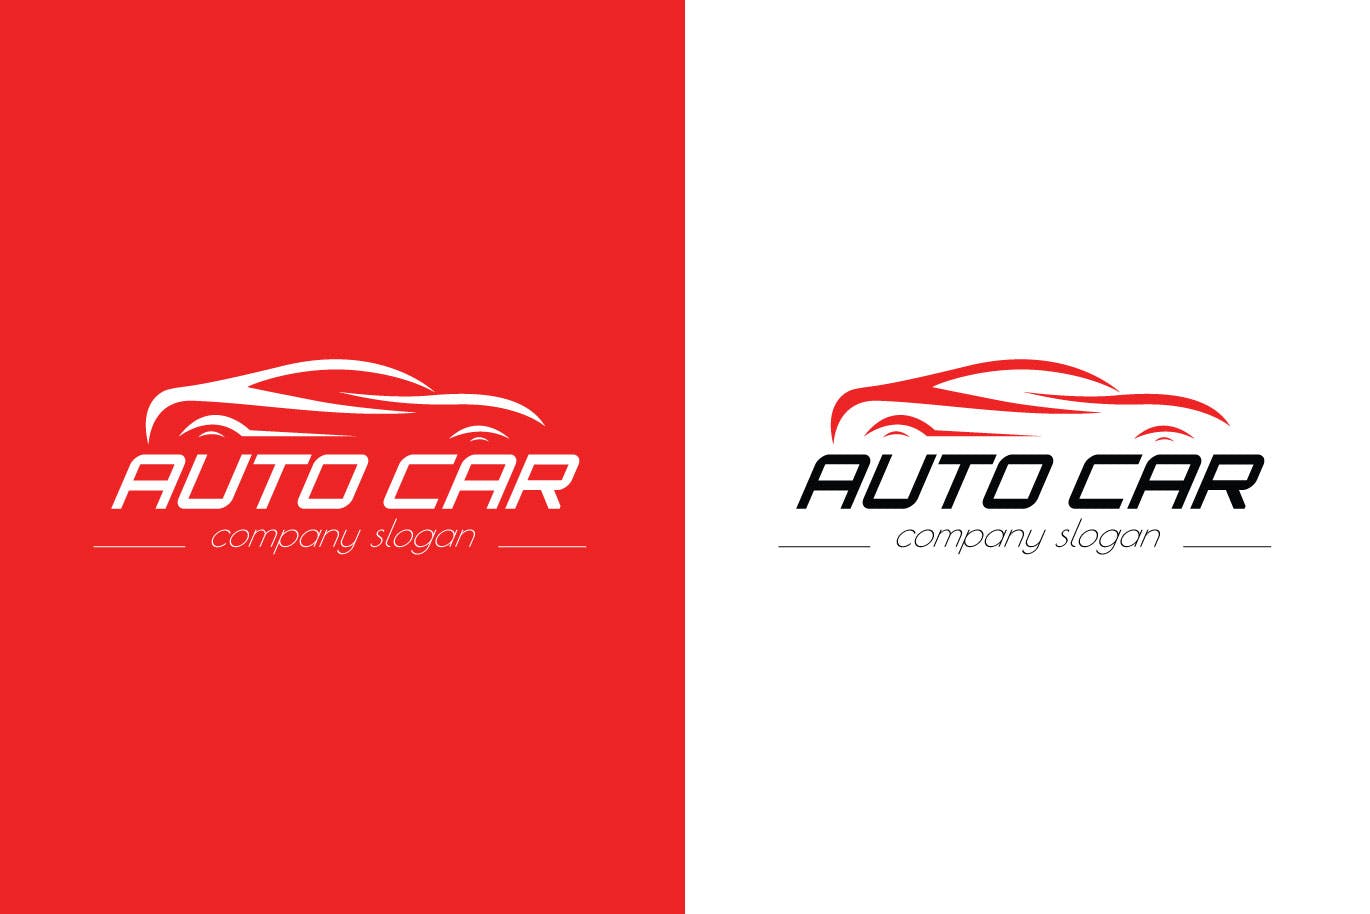 汽车相关企业品牌Logo设计蚂蚁素材精选模板 Auto Car Business Logo Template插图(1)